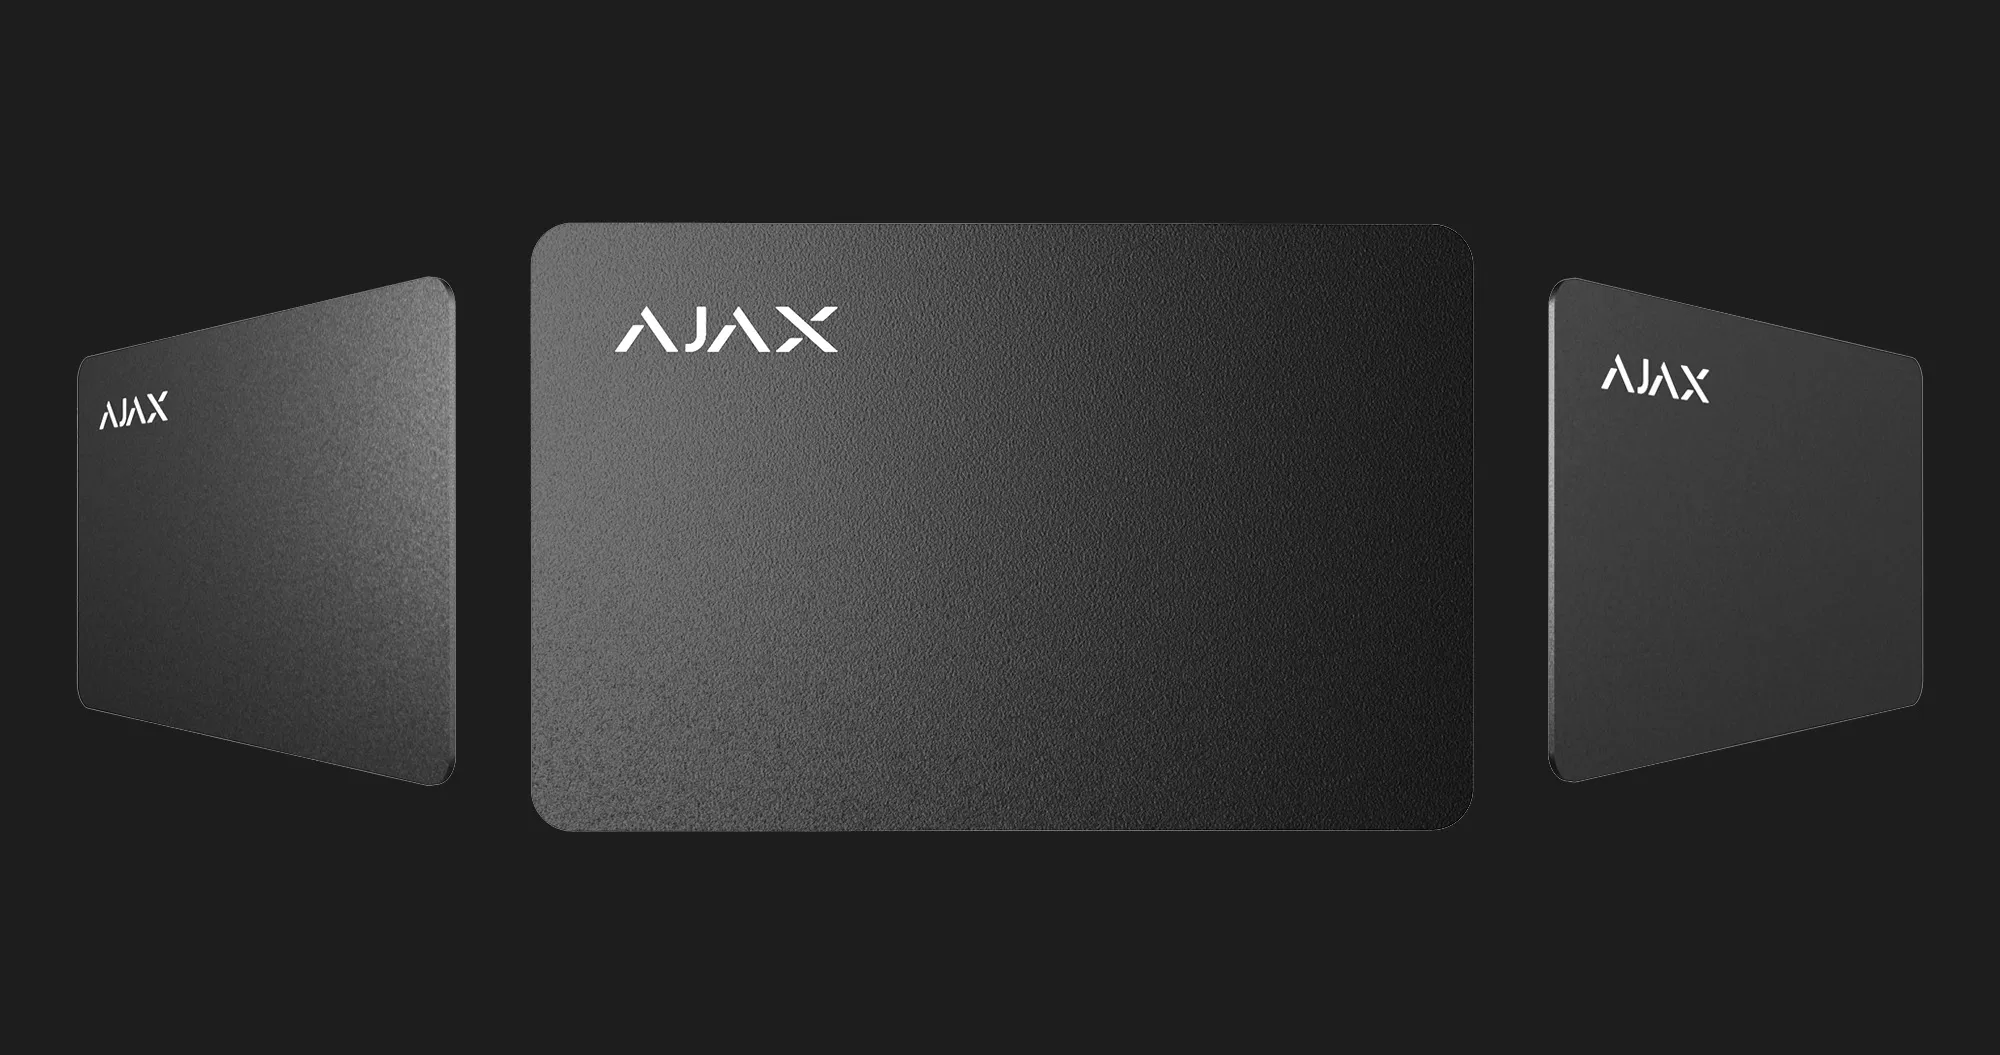 Безконтактна картка Ajax Pass Jeweler, 100 шт (White)